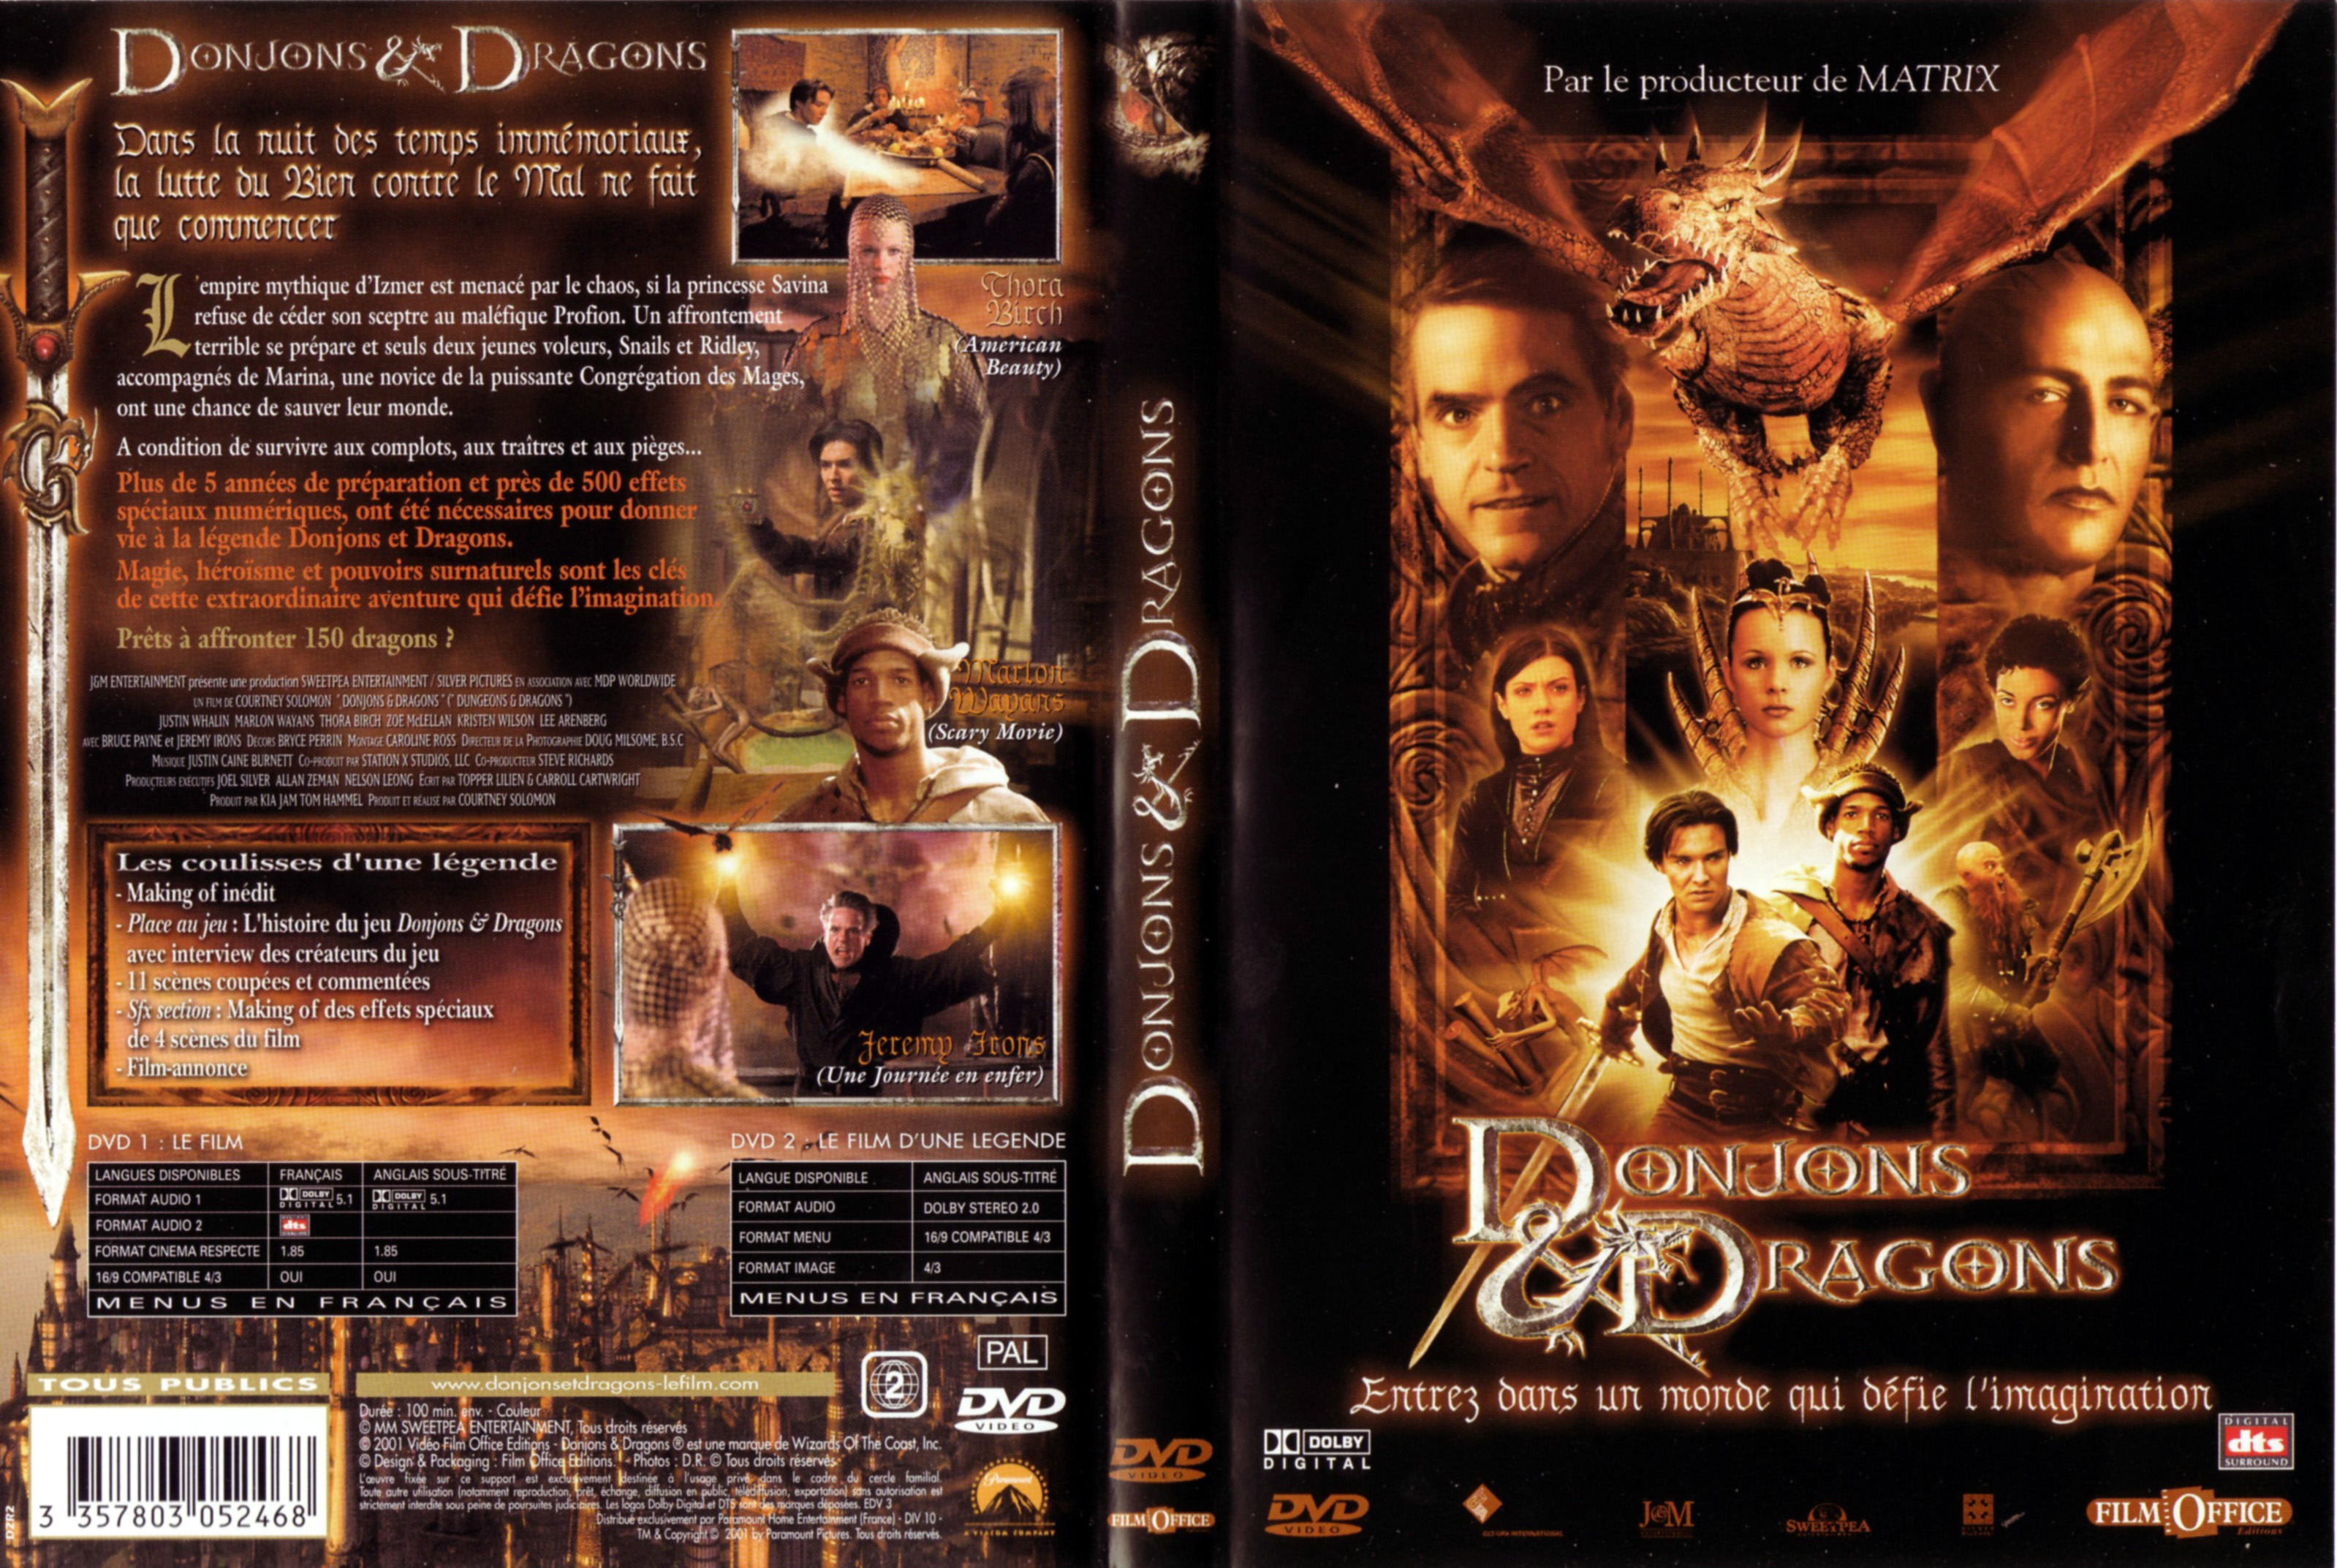 Jaquette DVD Donjons et Dragons v3